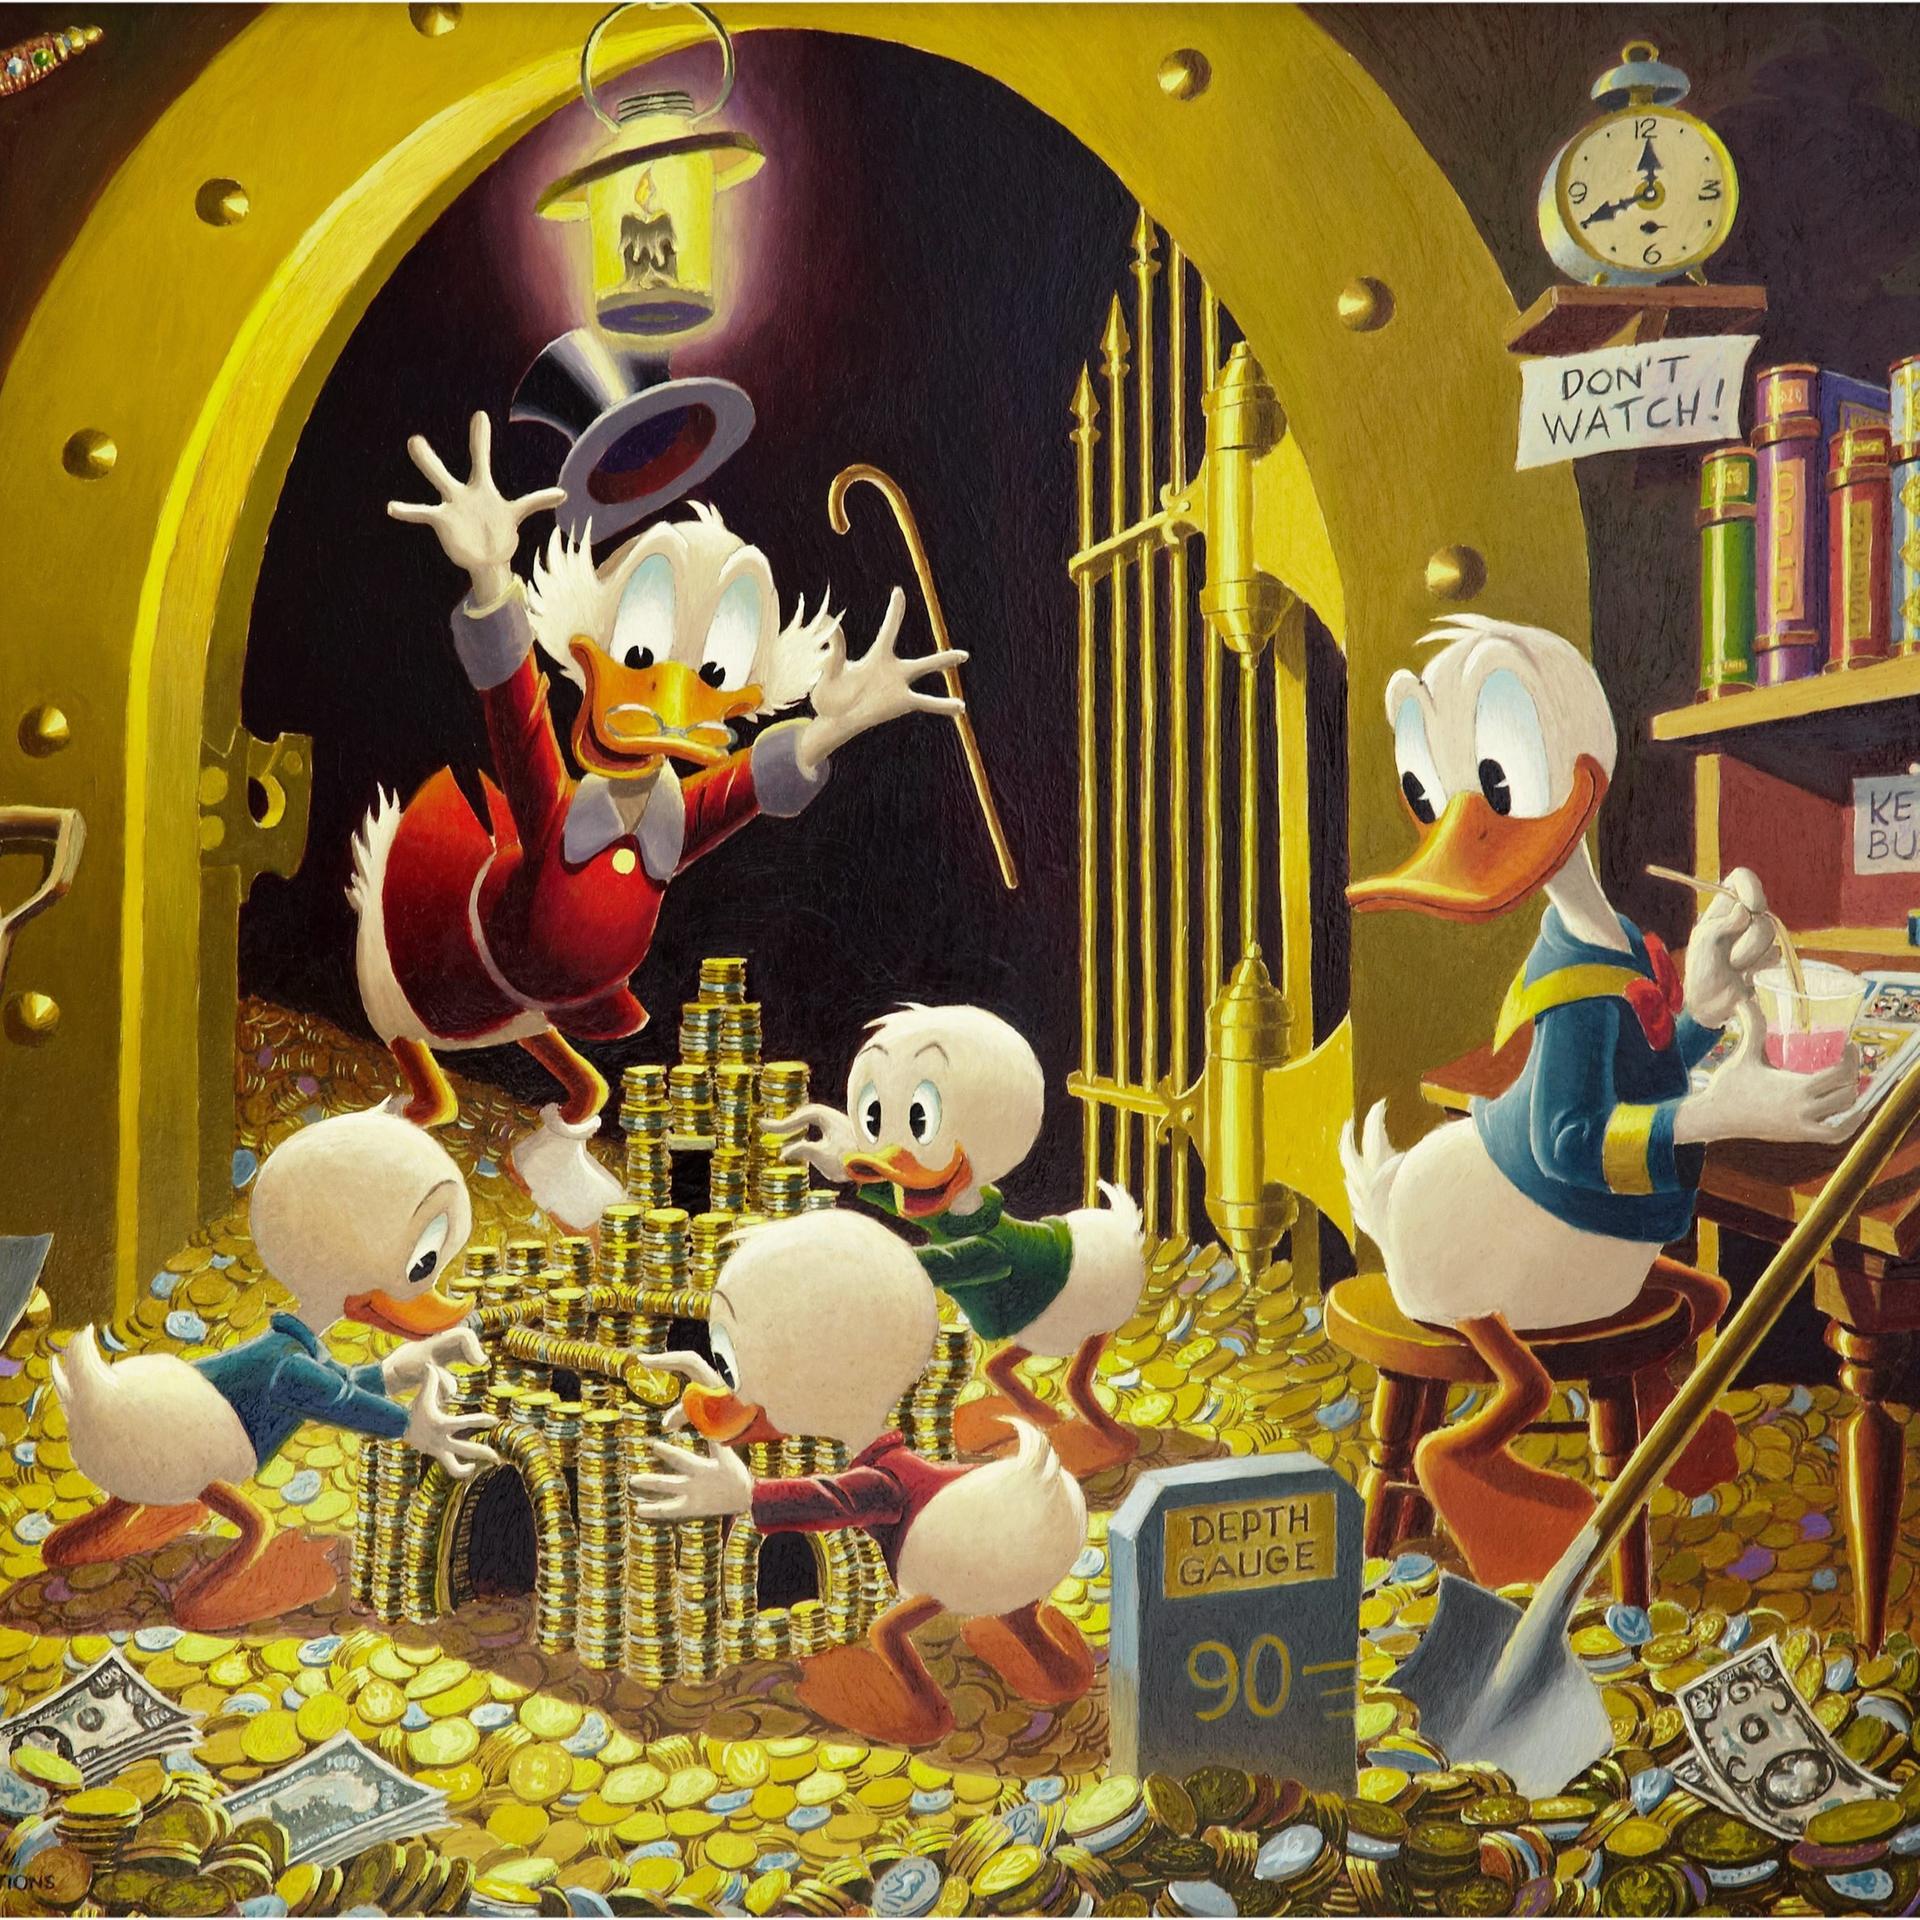 Dagobert und Donald Duck sowie ihre Neffen stehen in einem Tresorraum und zählen Münzen.